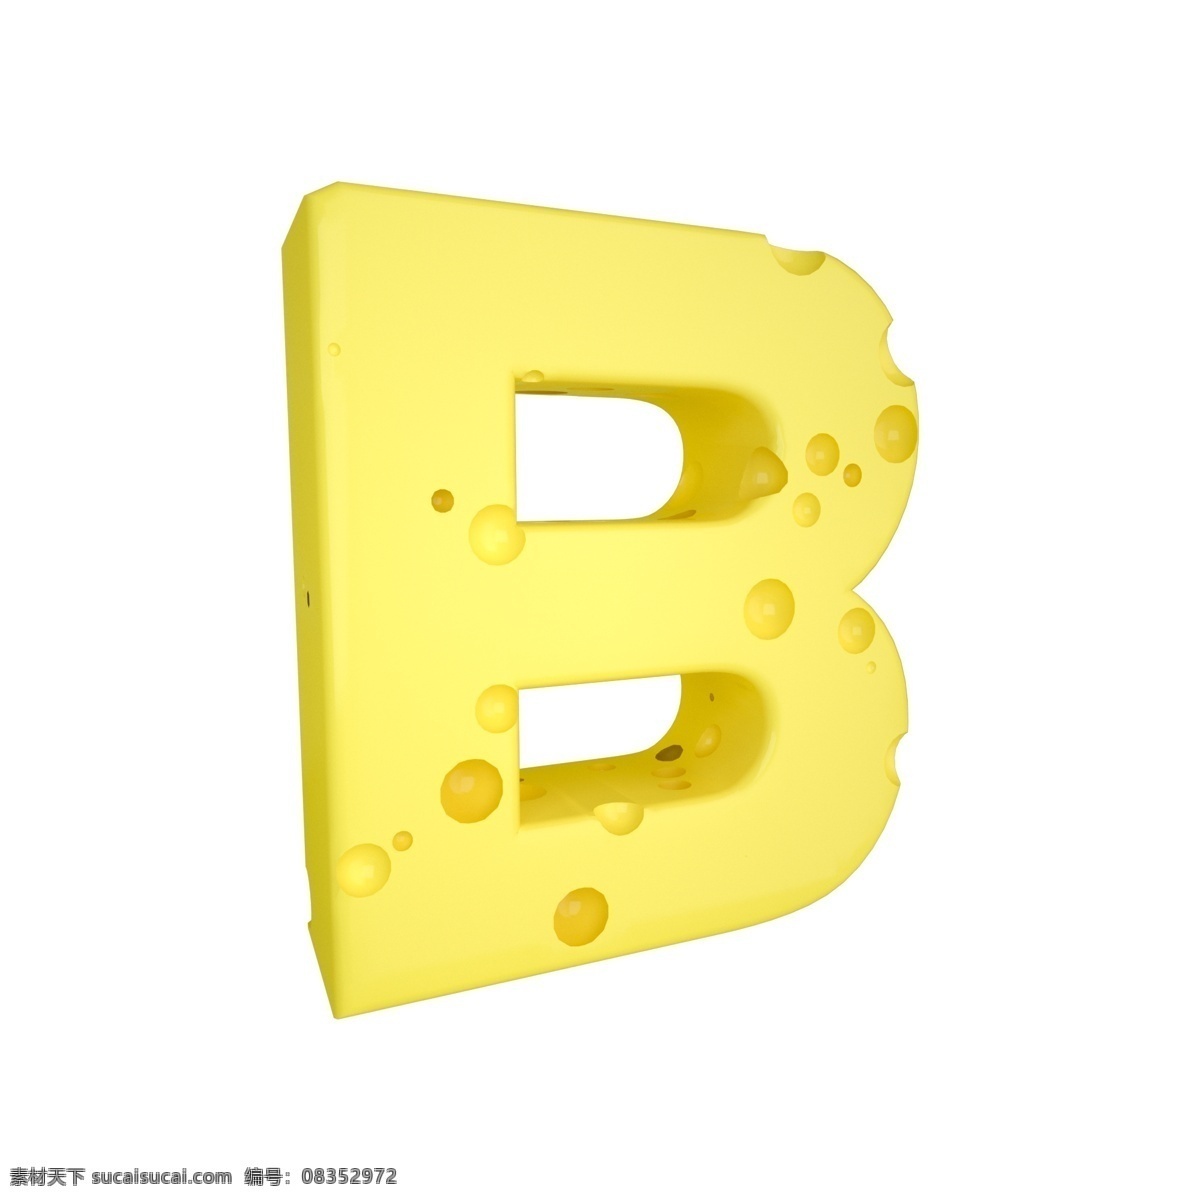 c4d 创意 奶酪 字母 b 装饰 3d 黄色 立体 食物 平面海报配图 电商淘宝装饰 可爱 柔和 字母b